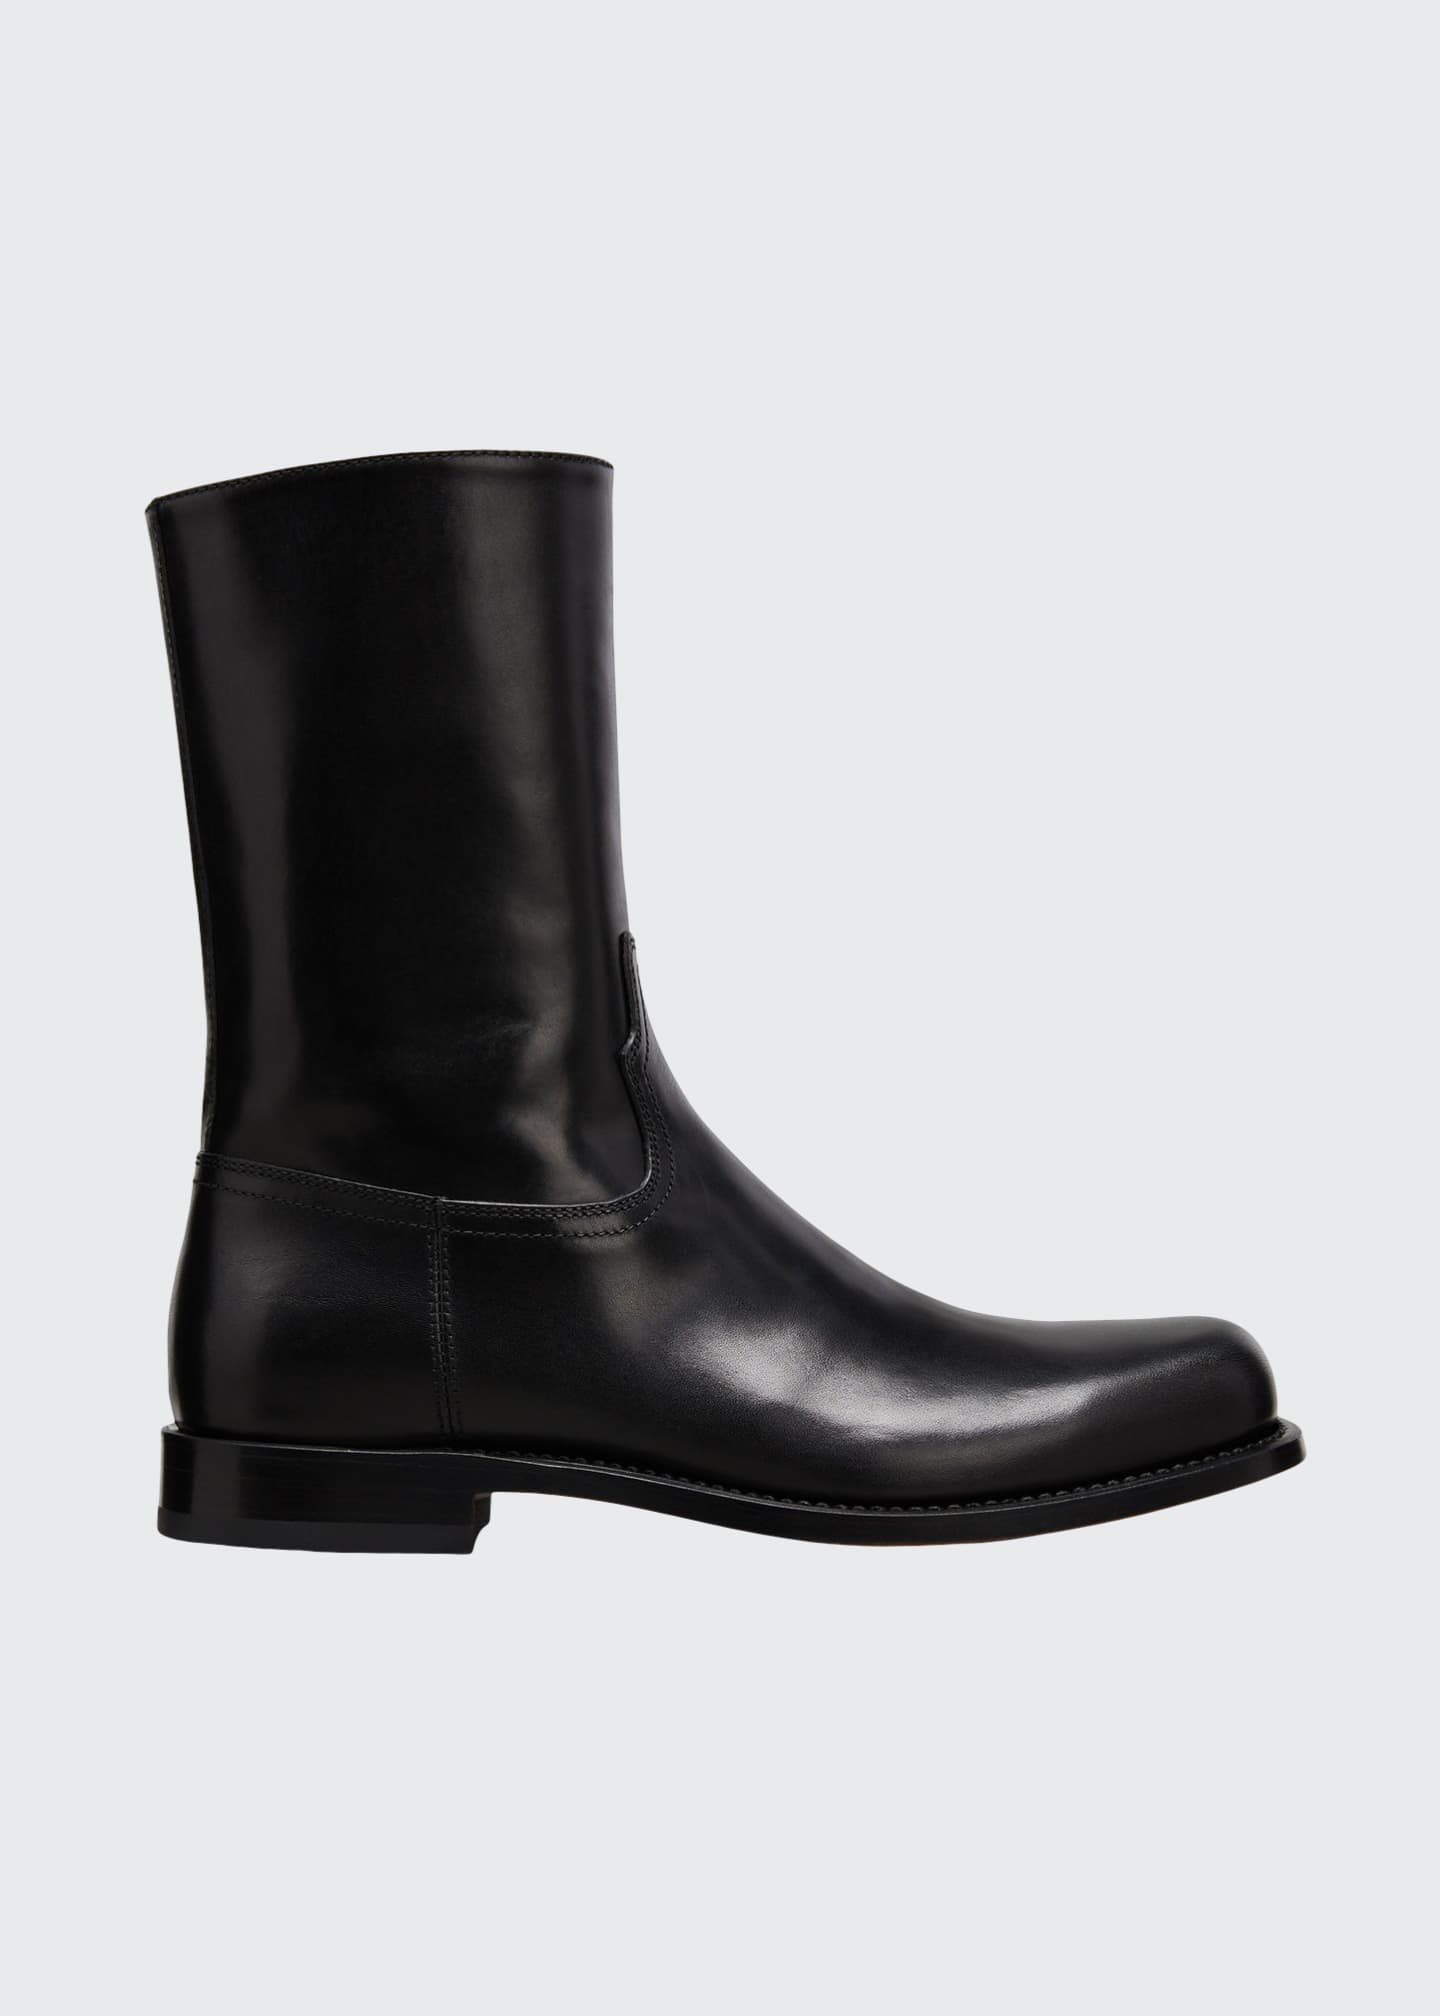 Dries Van Noten Men's Zip Calf Leather Boots - Bergdorf Goodman